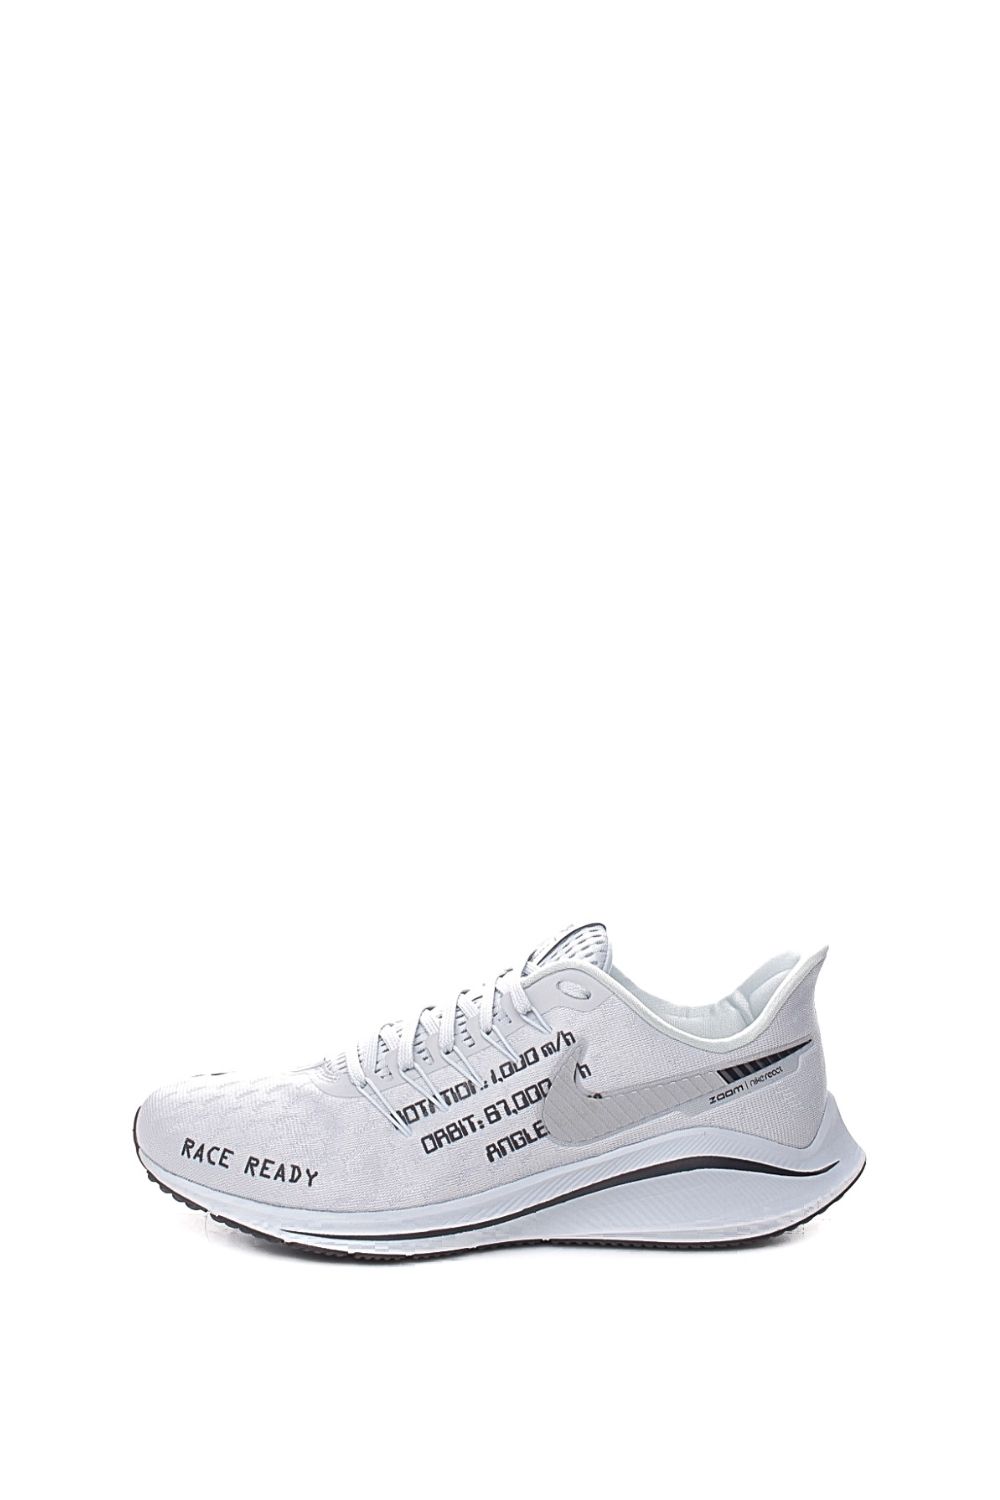 Ανδρικά/Παπούτσια/Αθλητικά/Running NIKE - Ανδρικά παπούτσια running NIKE AIR ZOOM VOMERO 14 λευκά